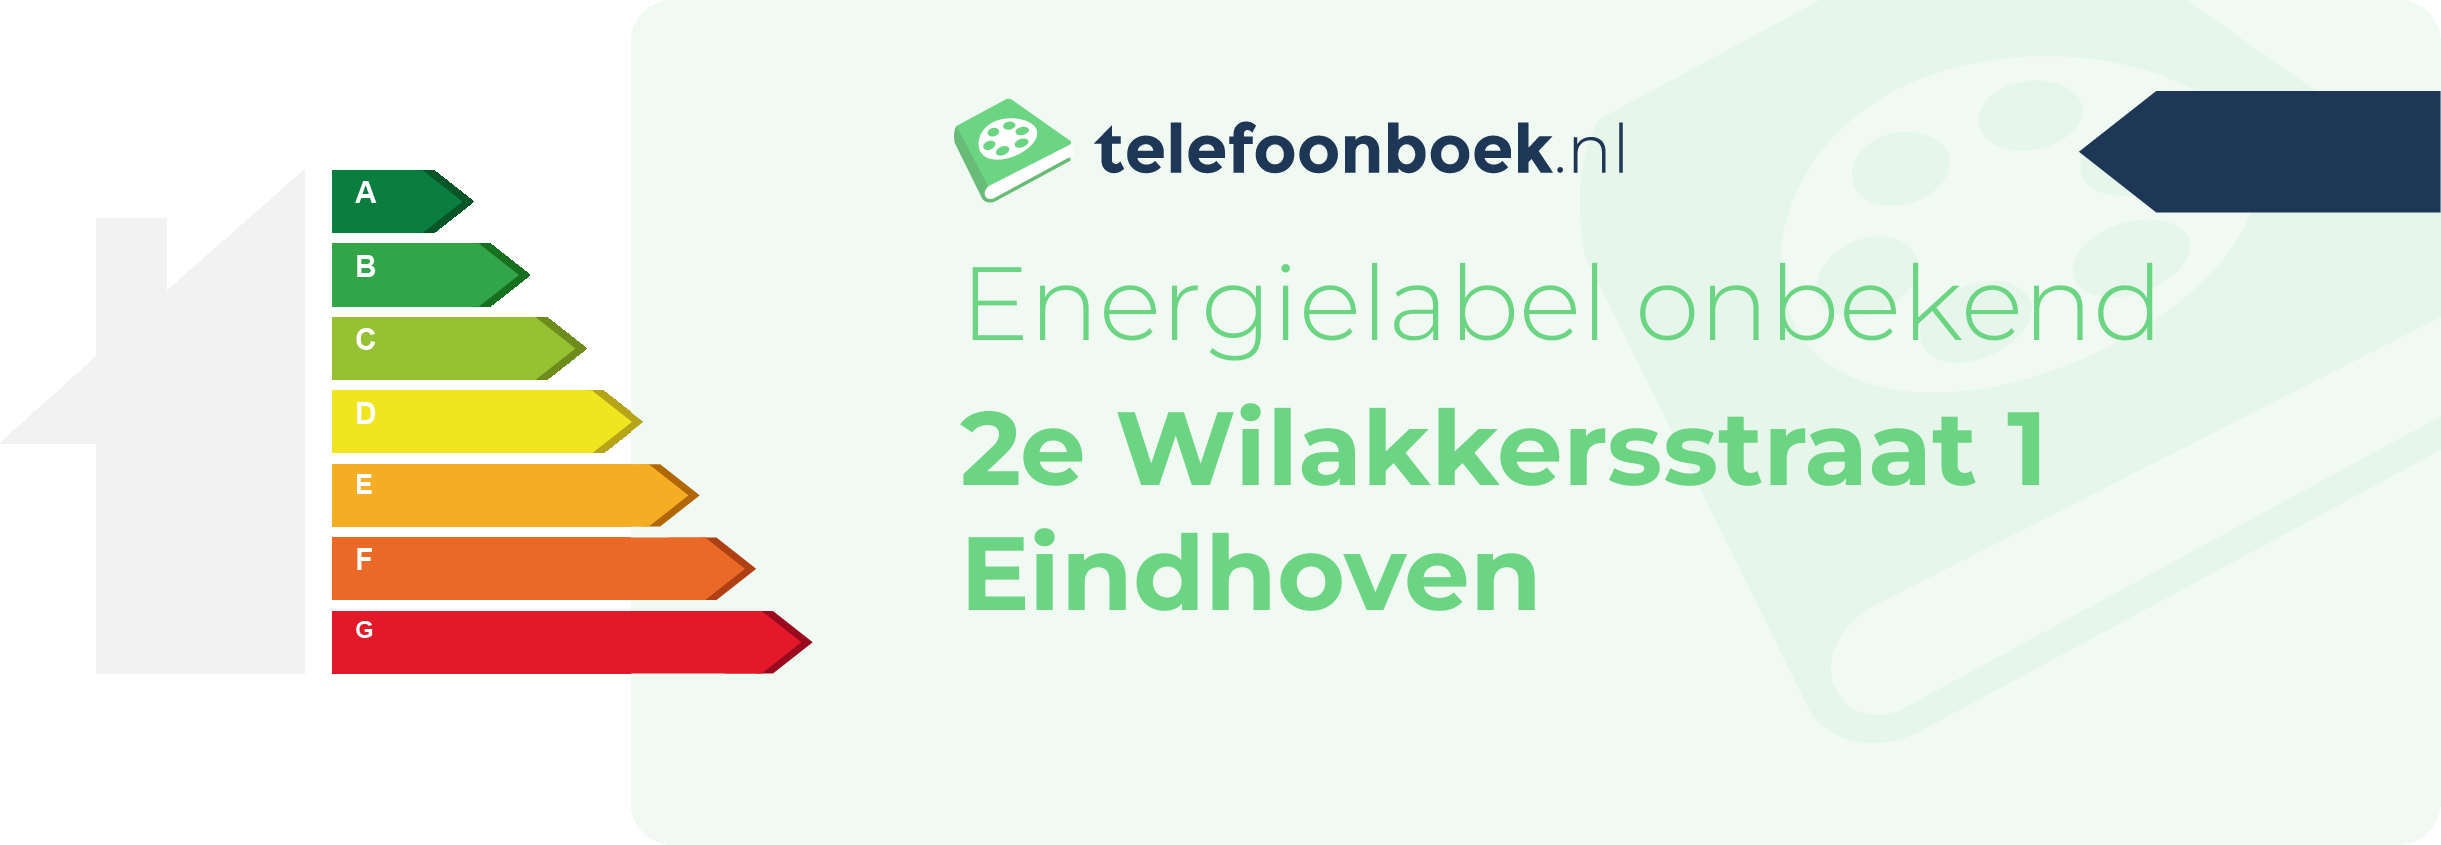 Energielabel 2e Wilakkersstraat 1 Eindhoven